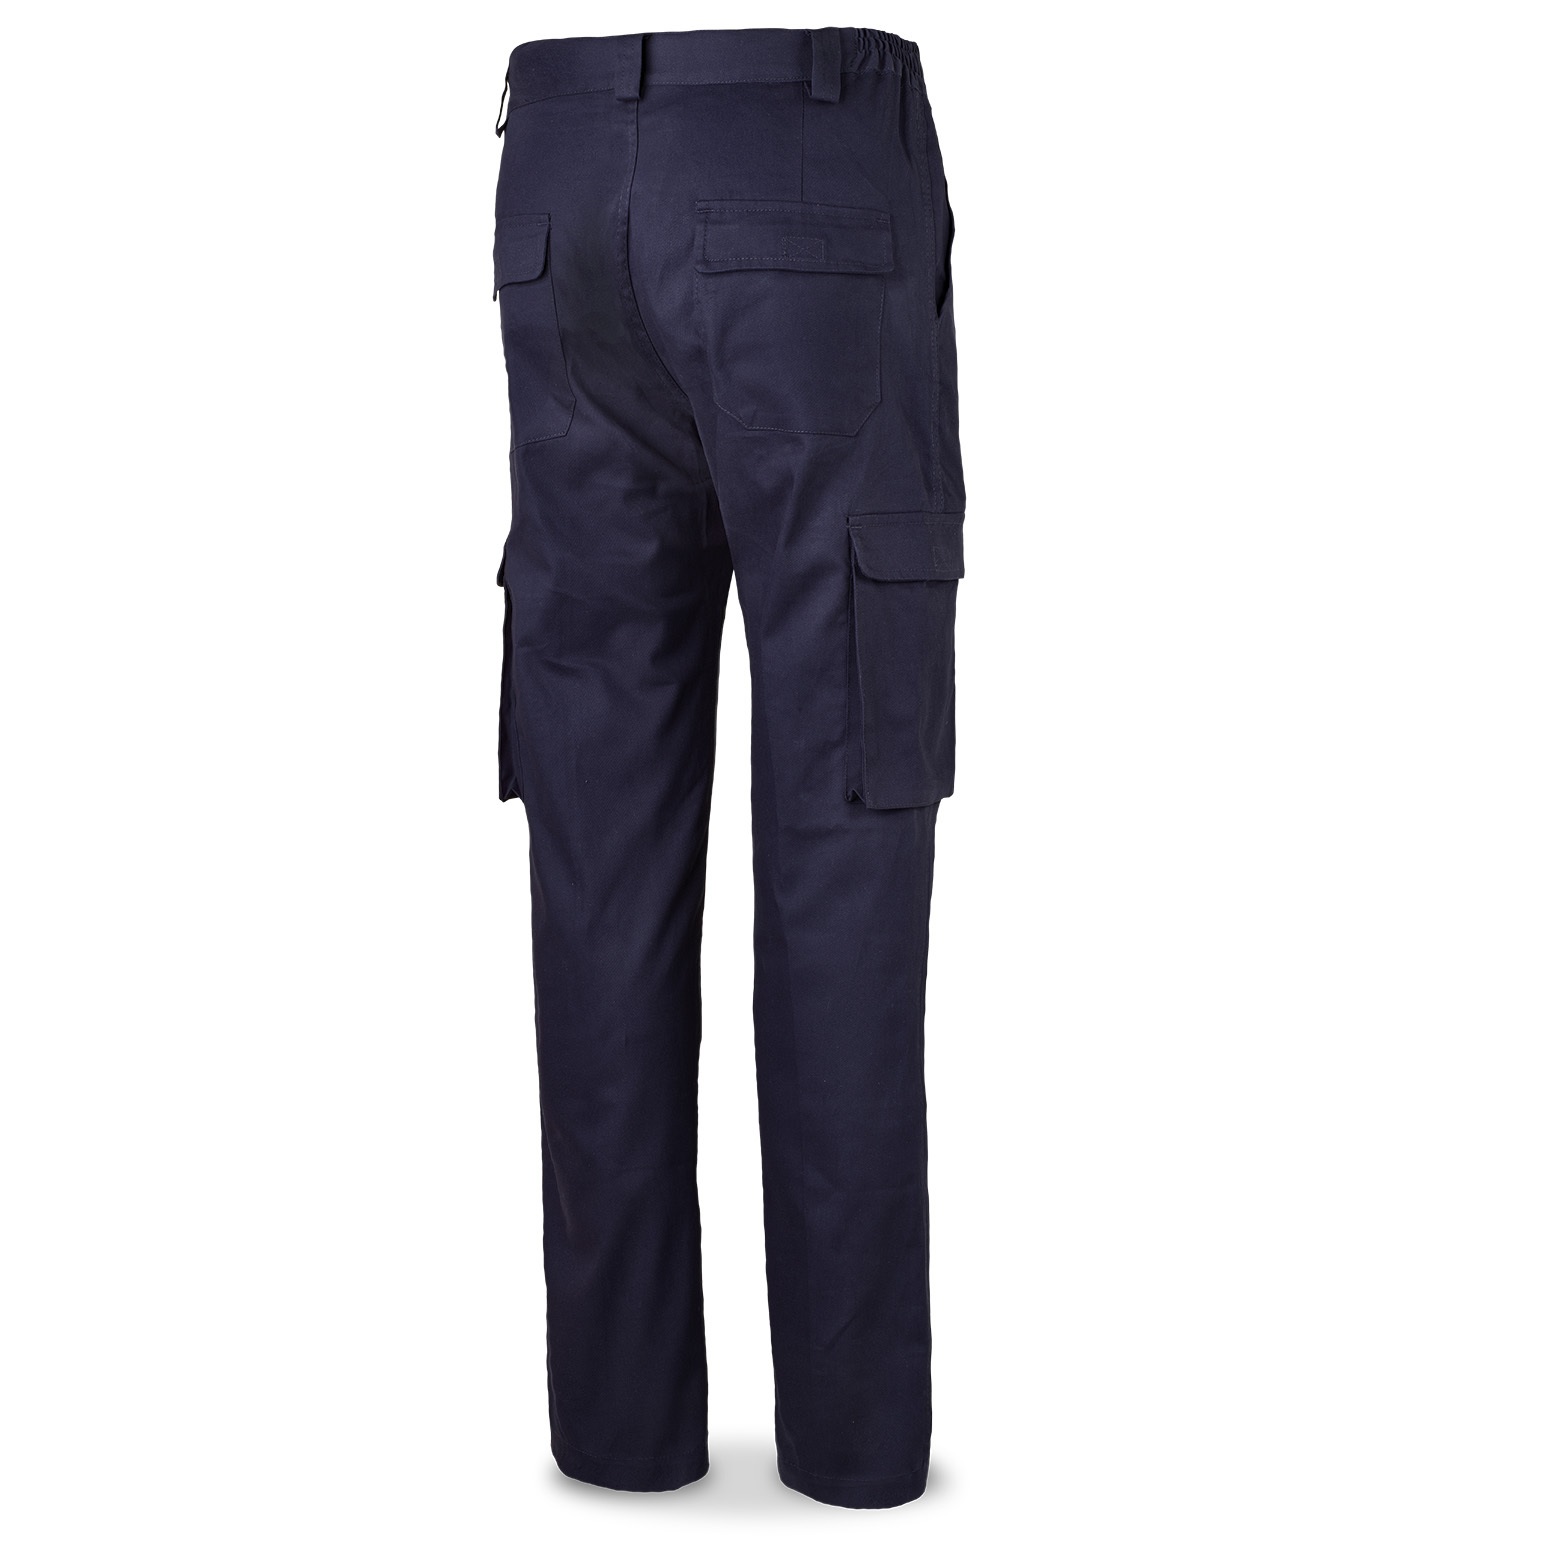 Pantalones de trabajo elásticos Jobman Workwear 2191